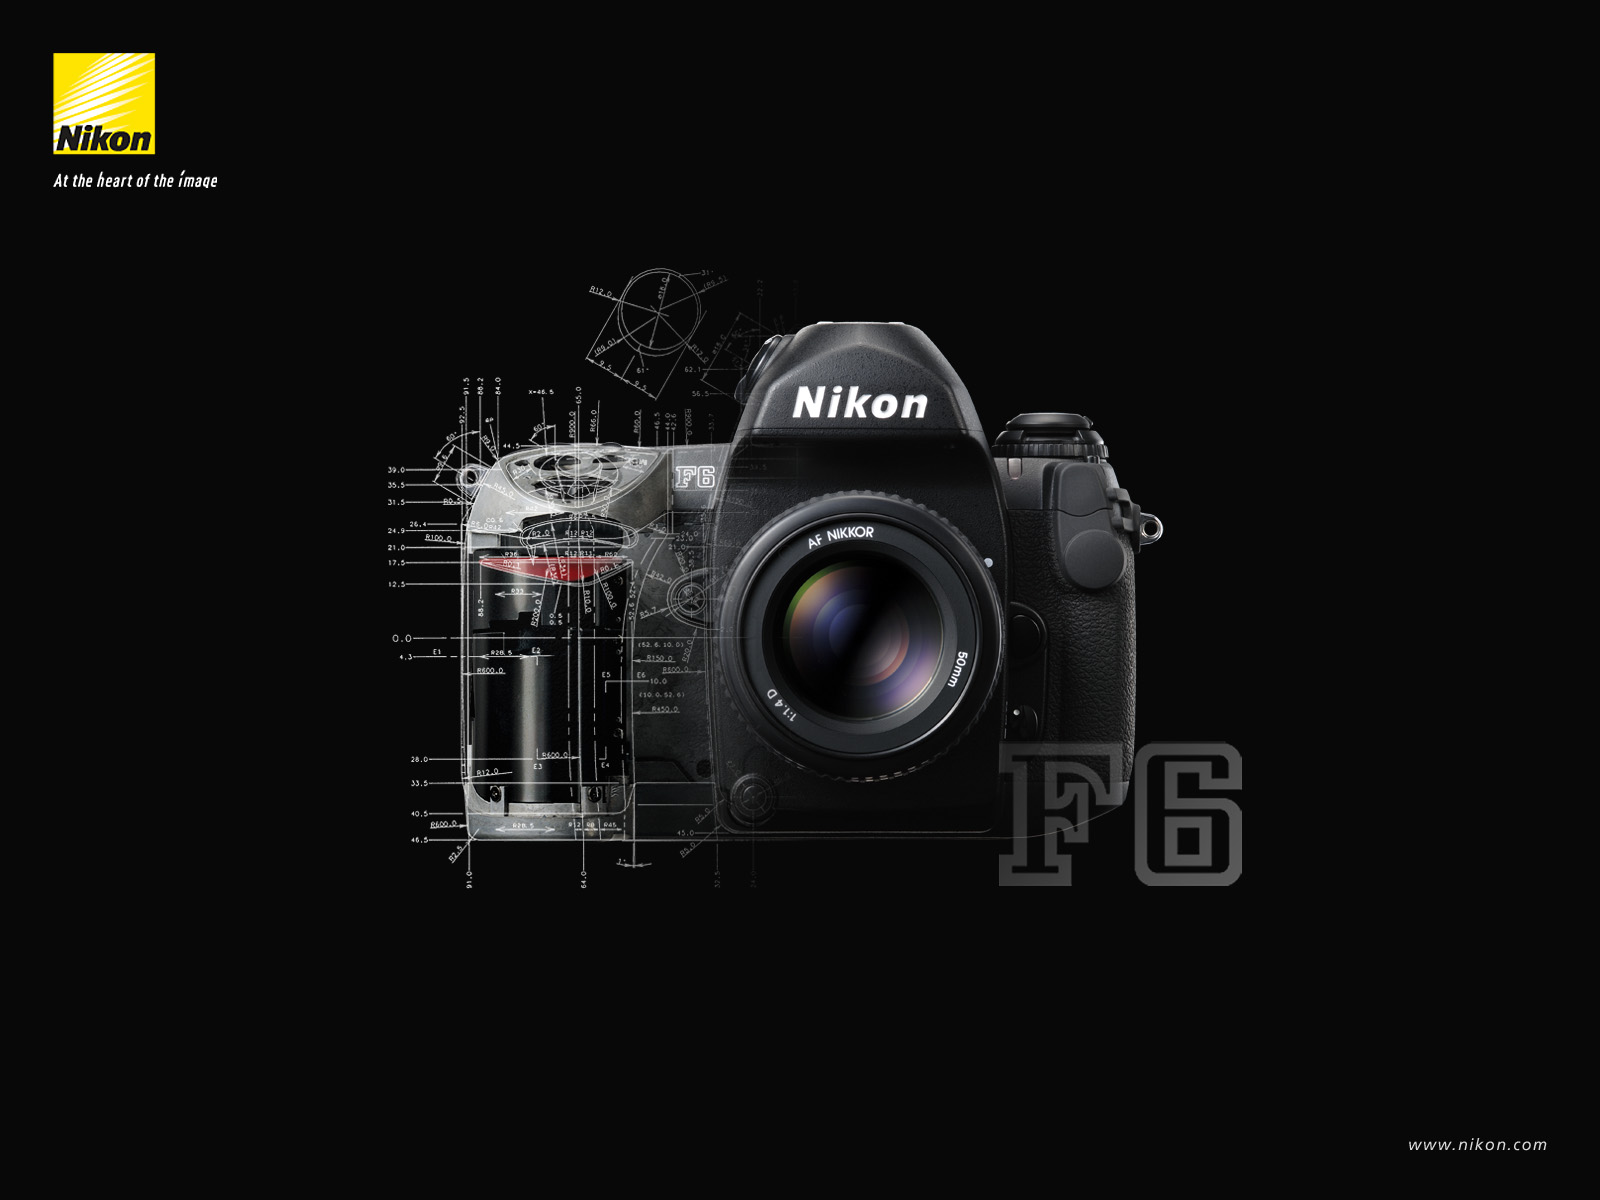 nikon壁紙hd,ミラーレス一眼カメラ,カメラ,デジタルカメラ,レフレックスカメラ,一眼レフカメラ